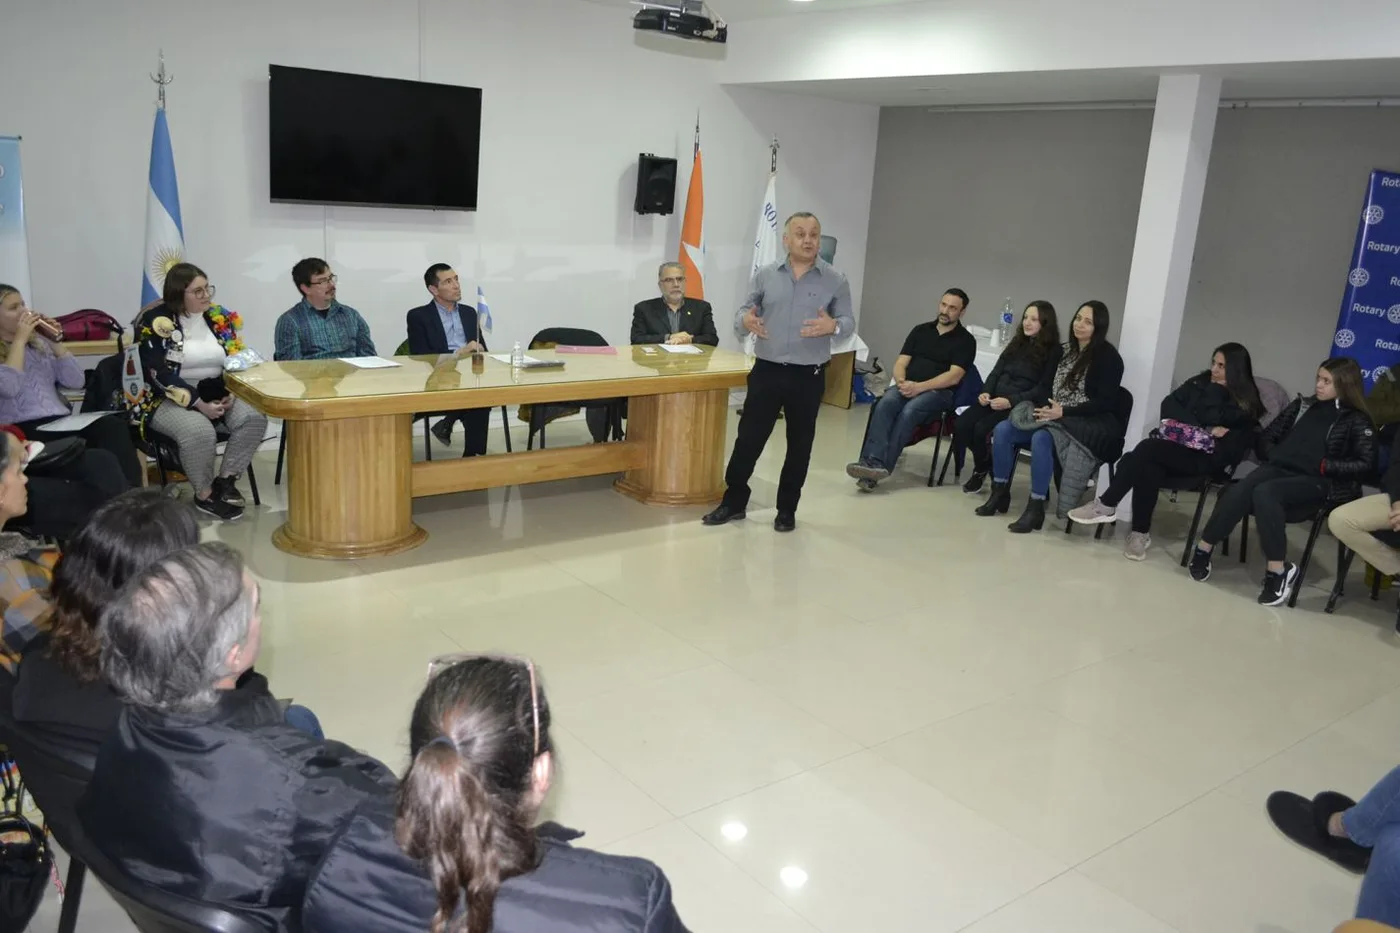 El Rotary Club Río Grande mantuvo una reunión con nueve postulantes al programa de intercambio internacional.